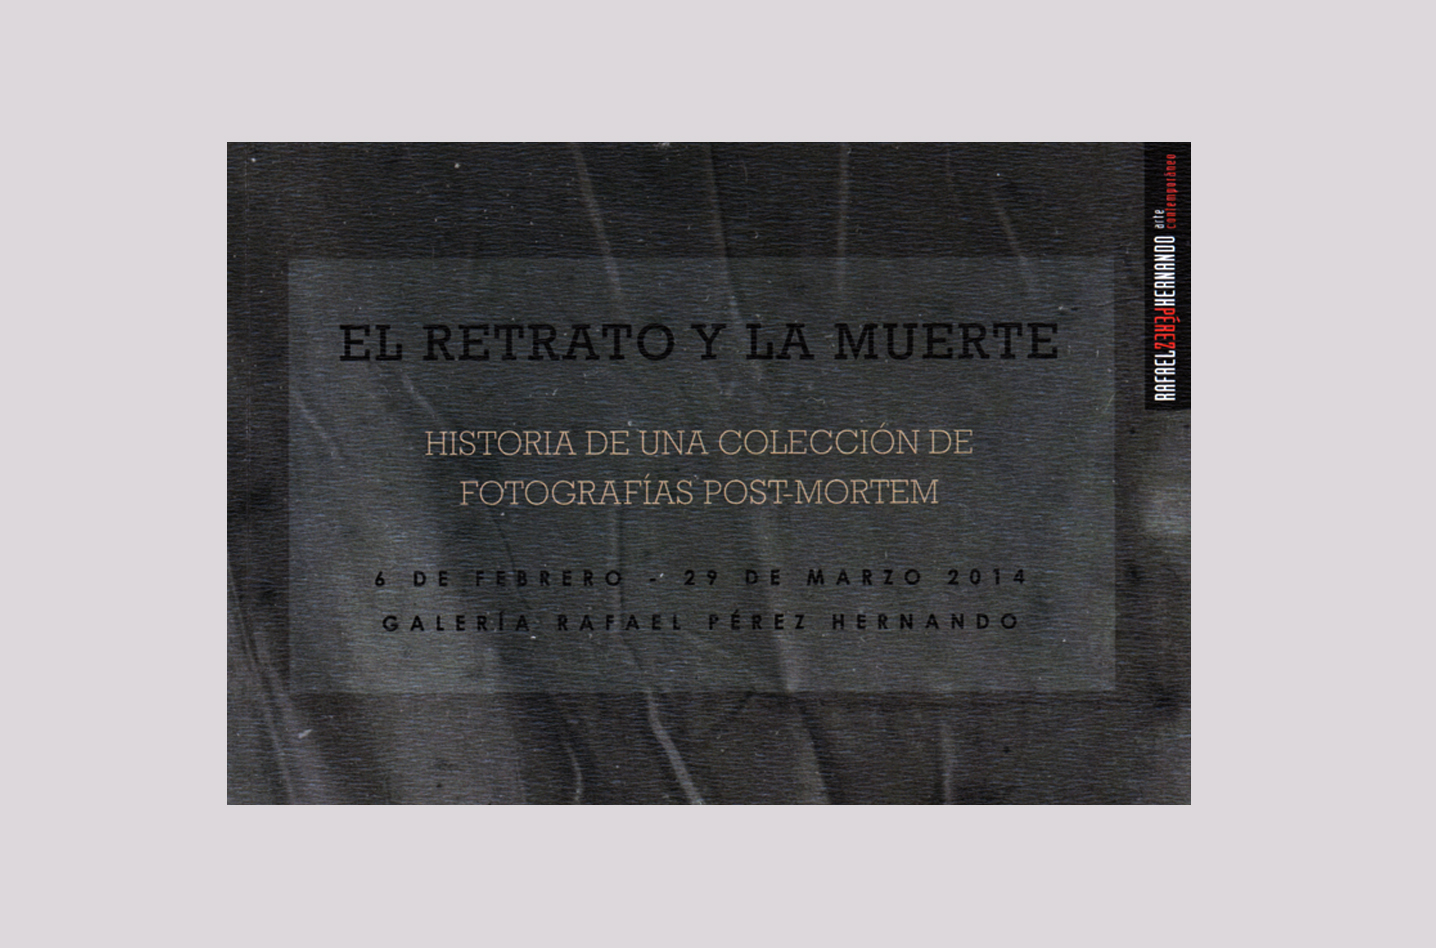 Catálogo , catalog, El retrato y la muerte, Olga Simón, dream2013, dream 2013, exhibition exposición, RPHART, Galería Rafael Pérez Hernando, Madrid, 2014, Secuencia, Post Mortem